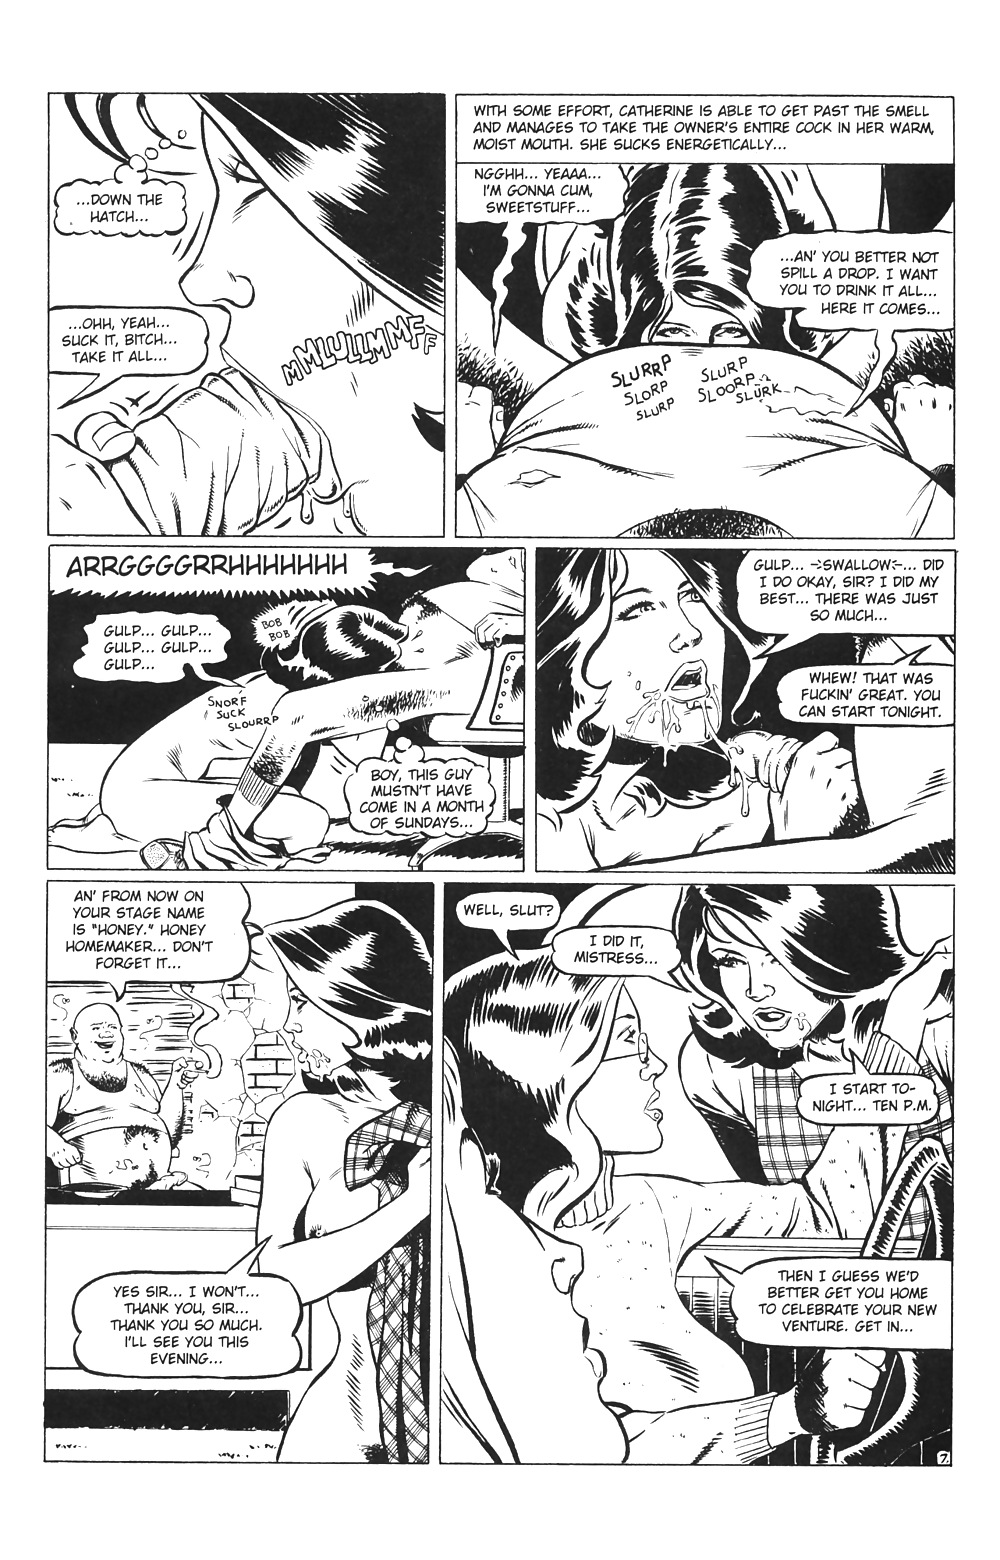 Ménagères En Jeu # 03 - Comics Eros Par Rebecca - Octobre 2001 #25713949